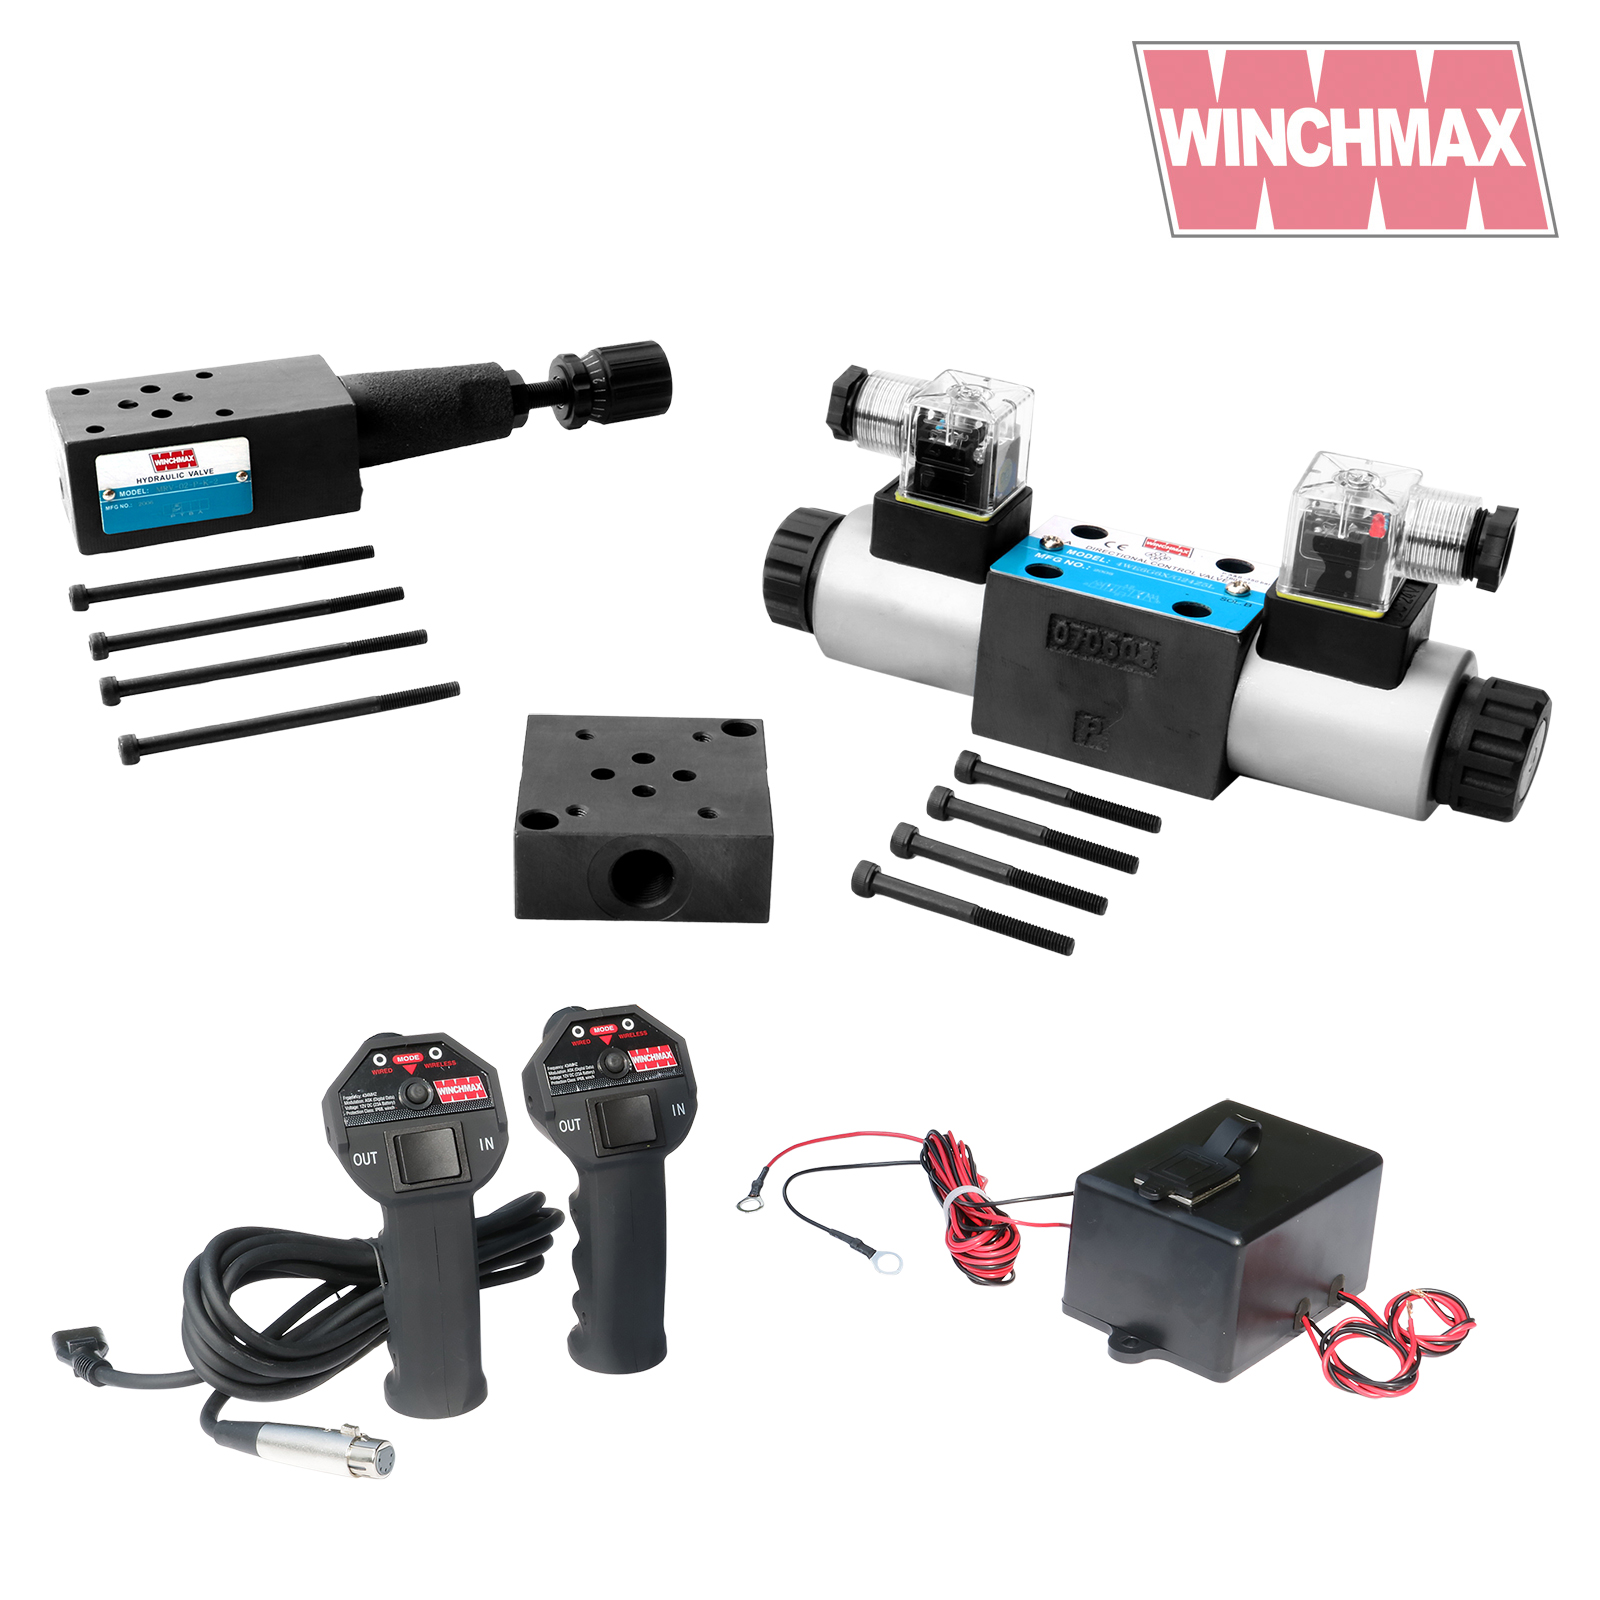 WINCHMAX CETOP3 Full Hydraulic Winch Control System